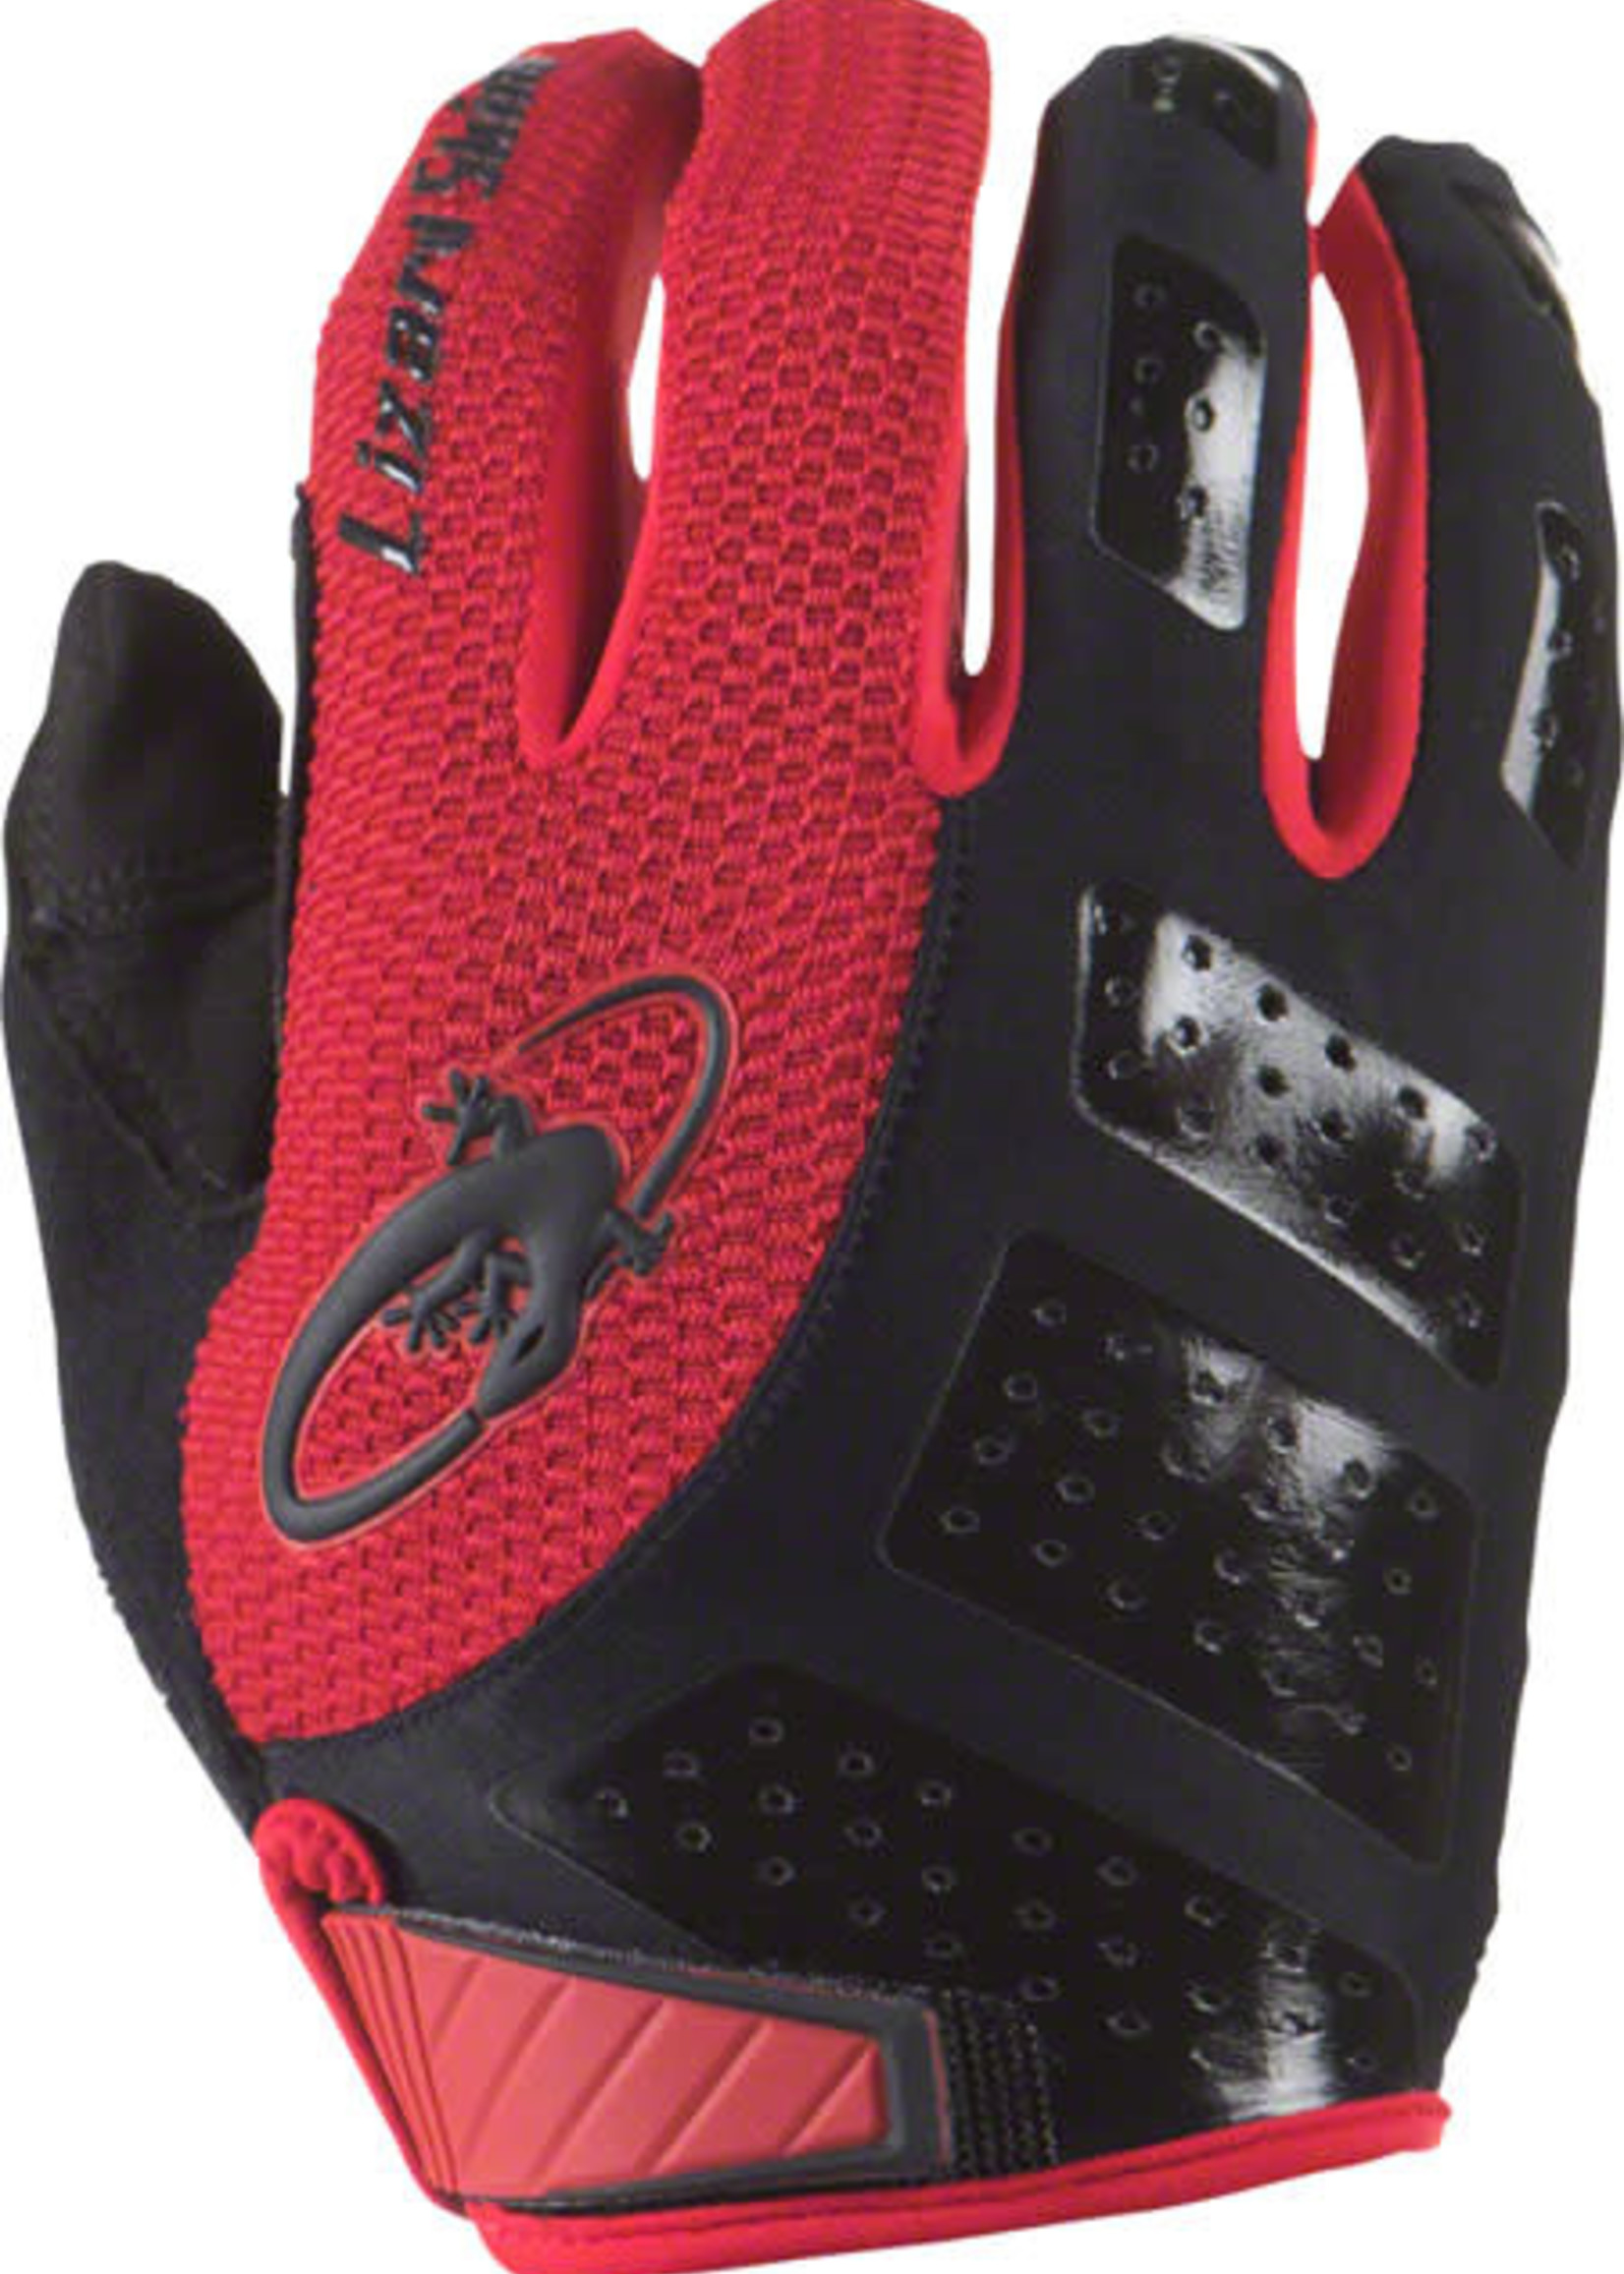 Lizard Skins Lizard Skins Monitor SL Gloves - Jet Black/Crimson, Full Finger, Small